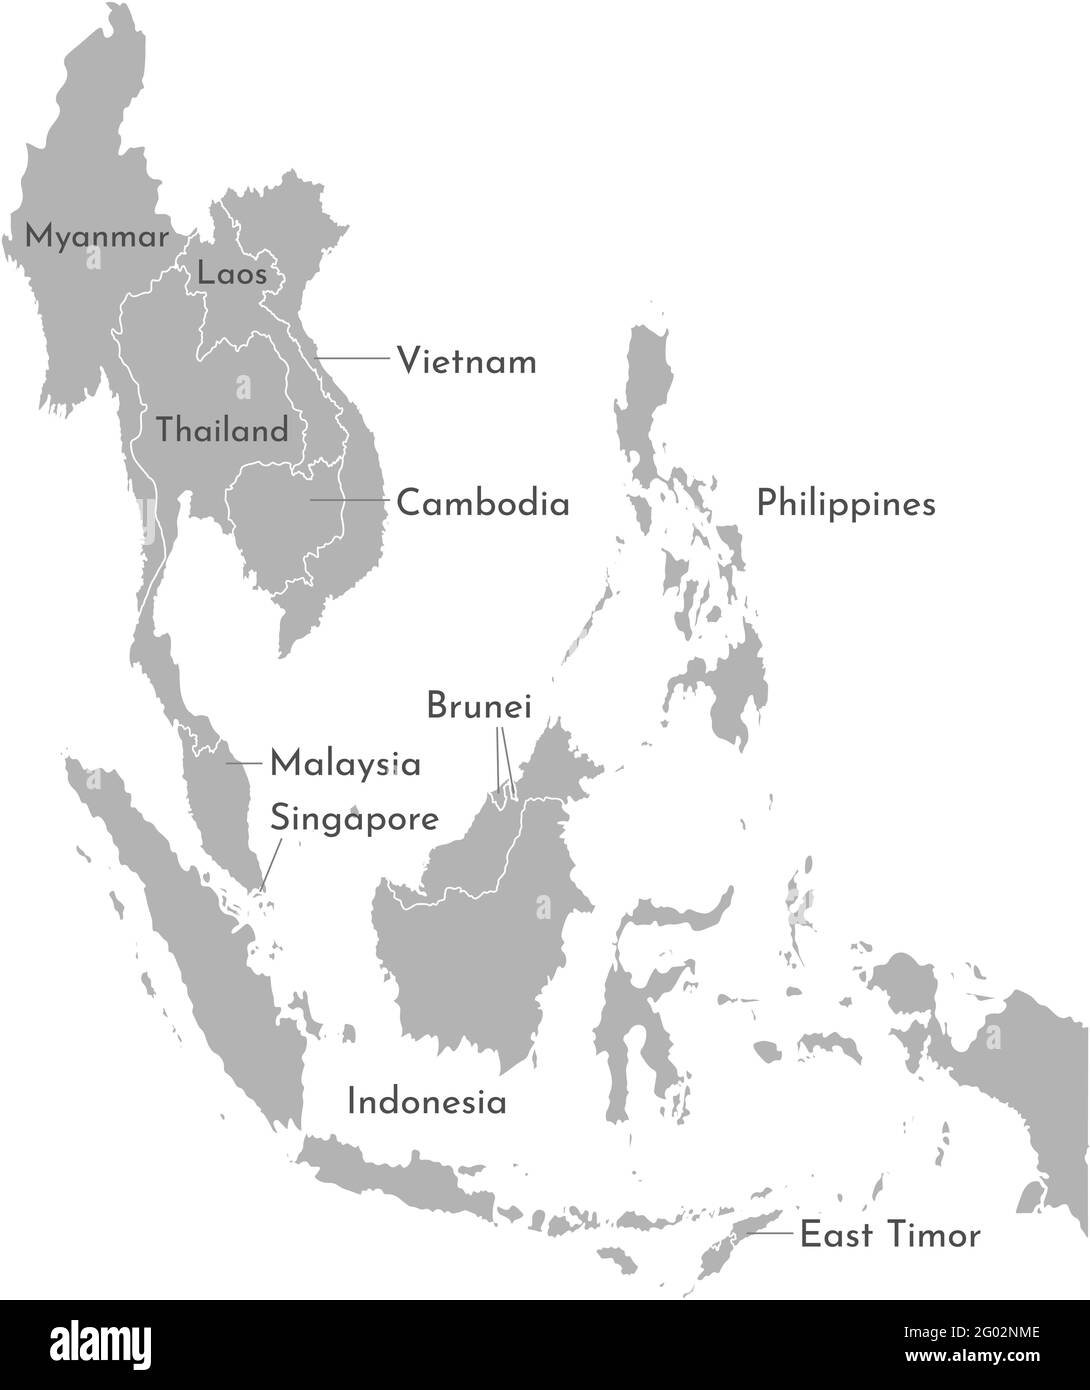 Illustrazione vettoriale con mappa semplificata dei paesi asiatici. Regione sud-est. Stati confinanti con Myanmar, Brunei, Indonesia, Vietnam, Cambogia, Malay Illustrazione Vettoriale